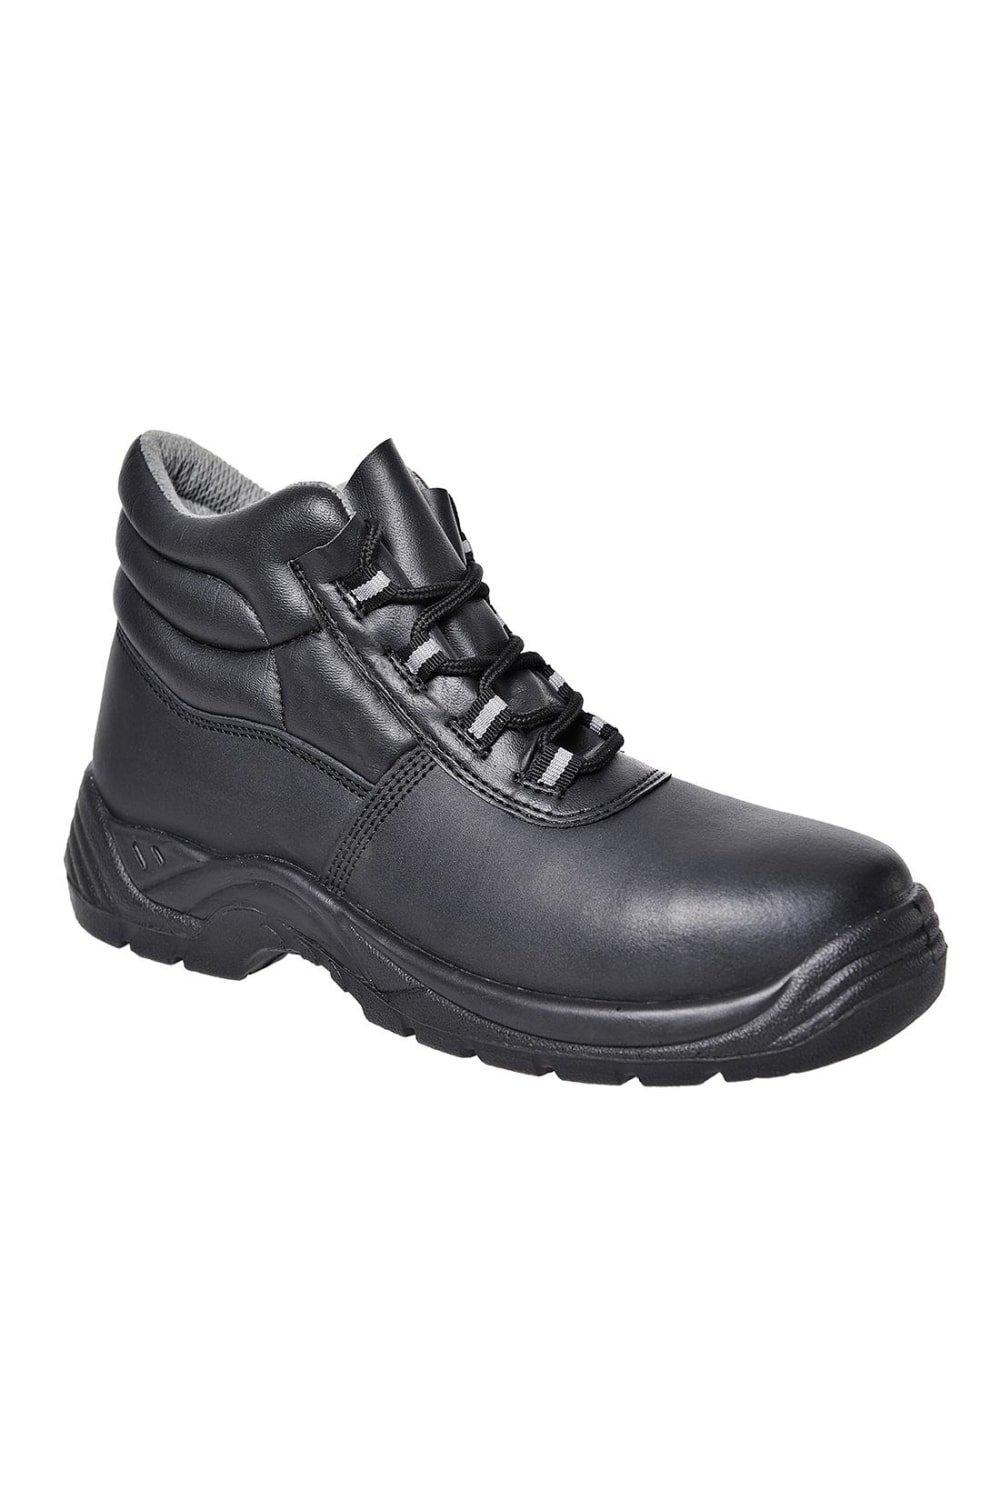 Кожаные композитные защитные ботинки Portwest, черный цена и фото